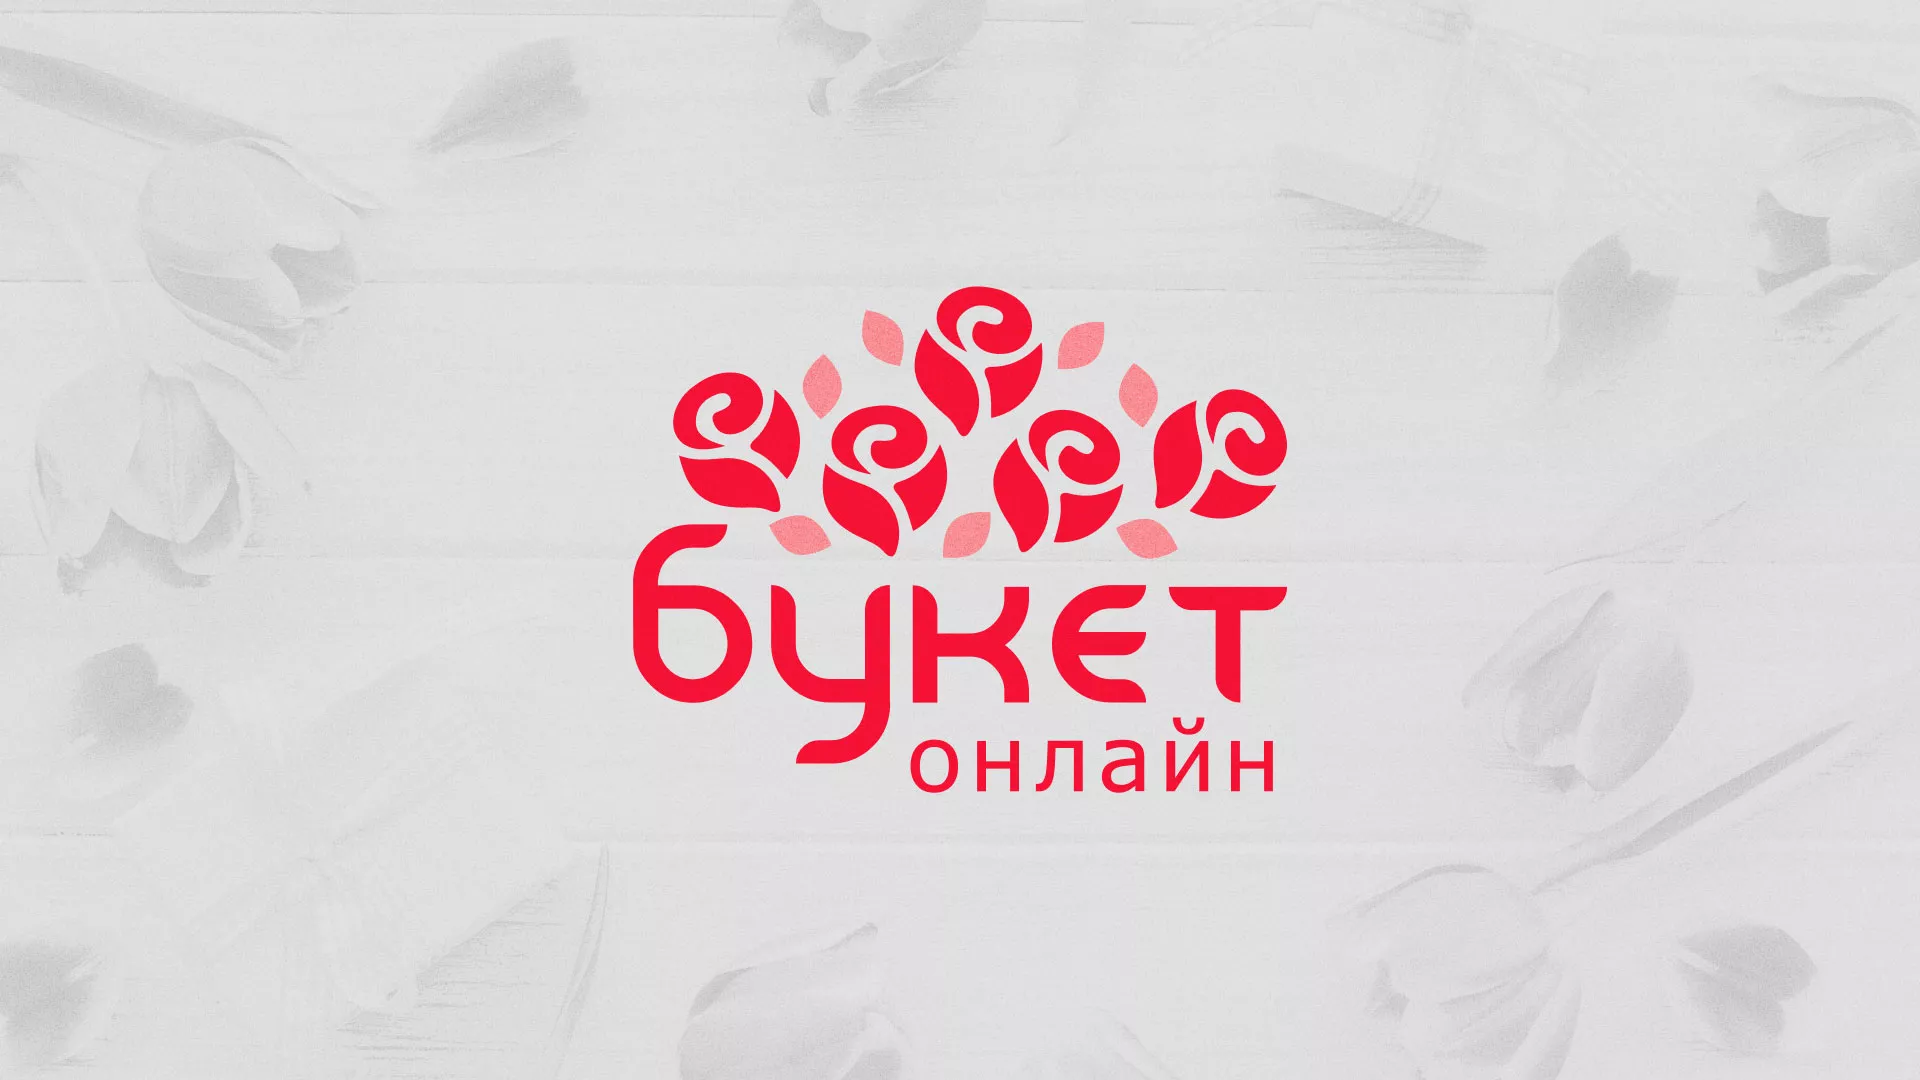 Создание интернет-магазина «Букет-онлайн» по цветам в Данилове